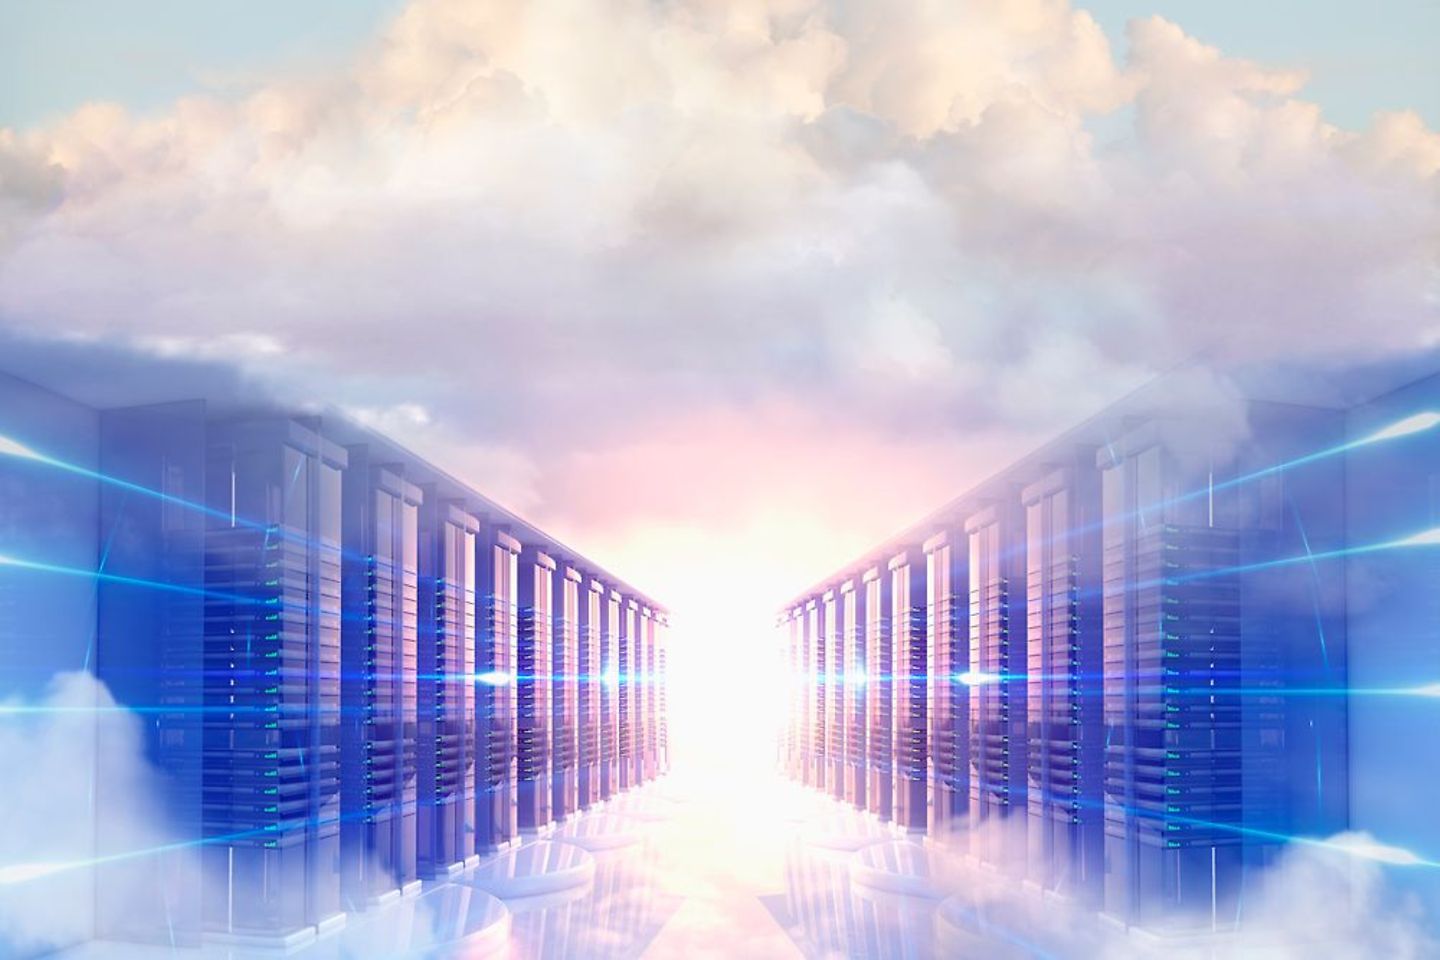 Serverkasten omringd door pastelkleurige wolken en een lichtbron in het midden